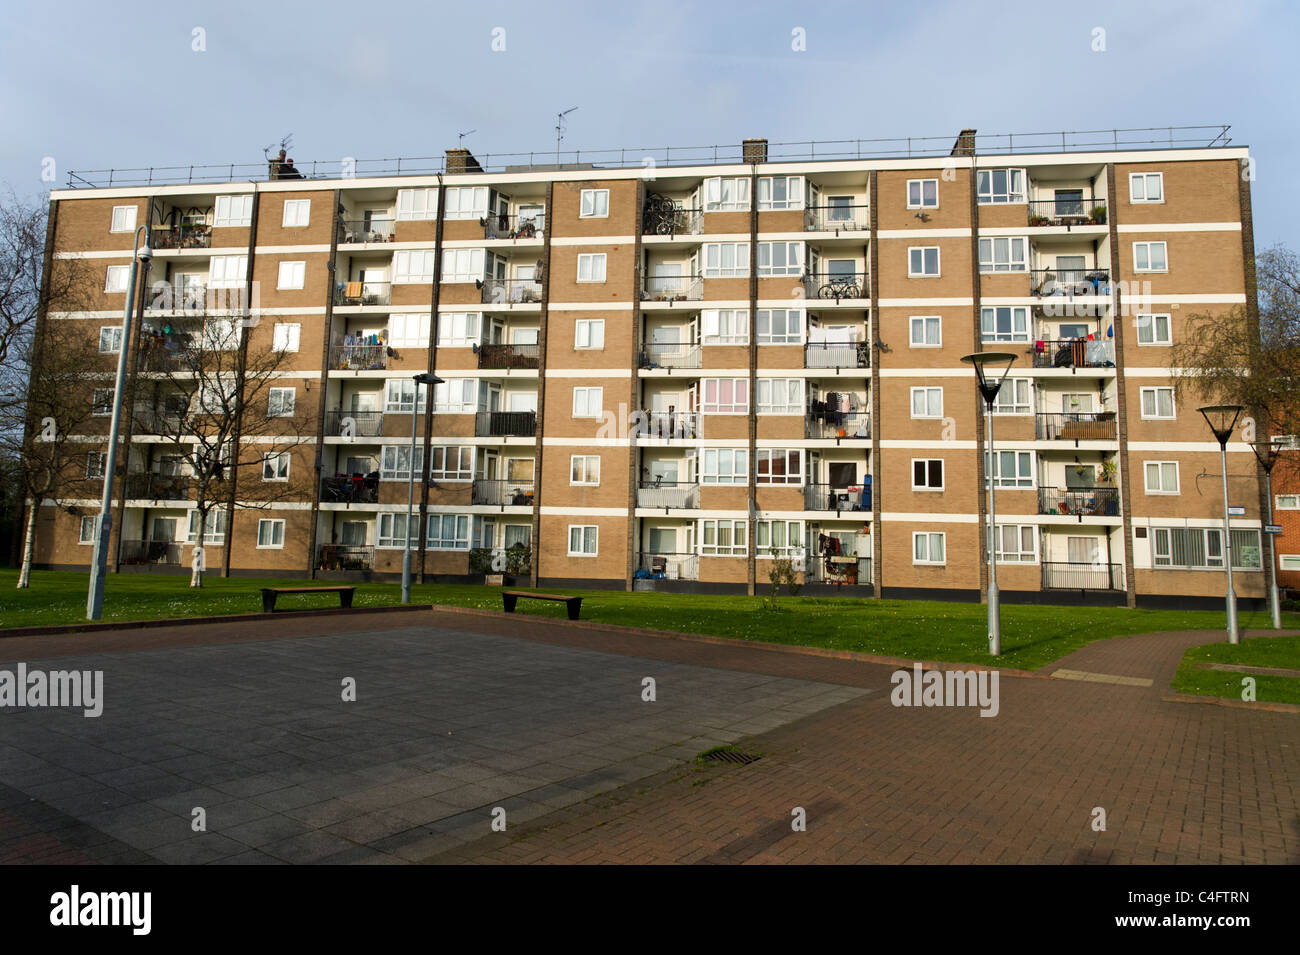 Consejo de bloque de pisos, Hackney, Londres, Reino Unido. Foto de stock